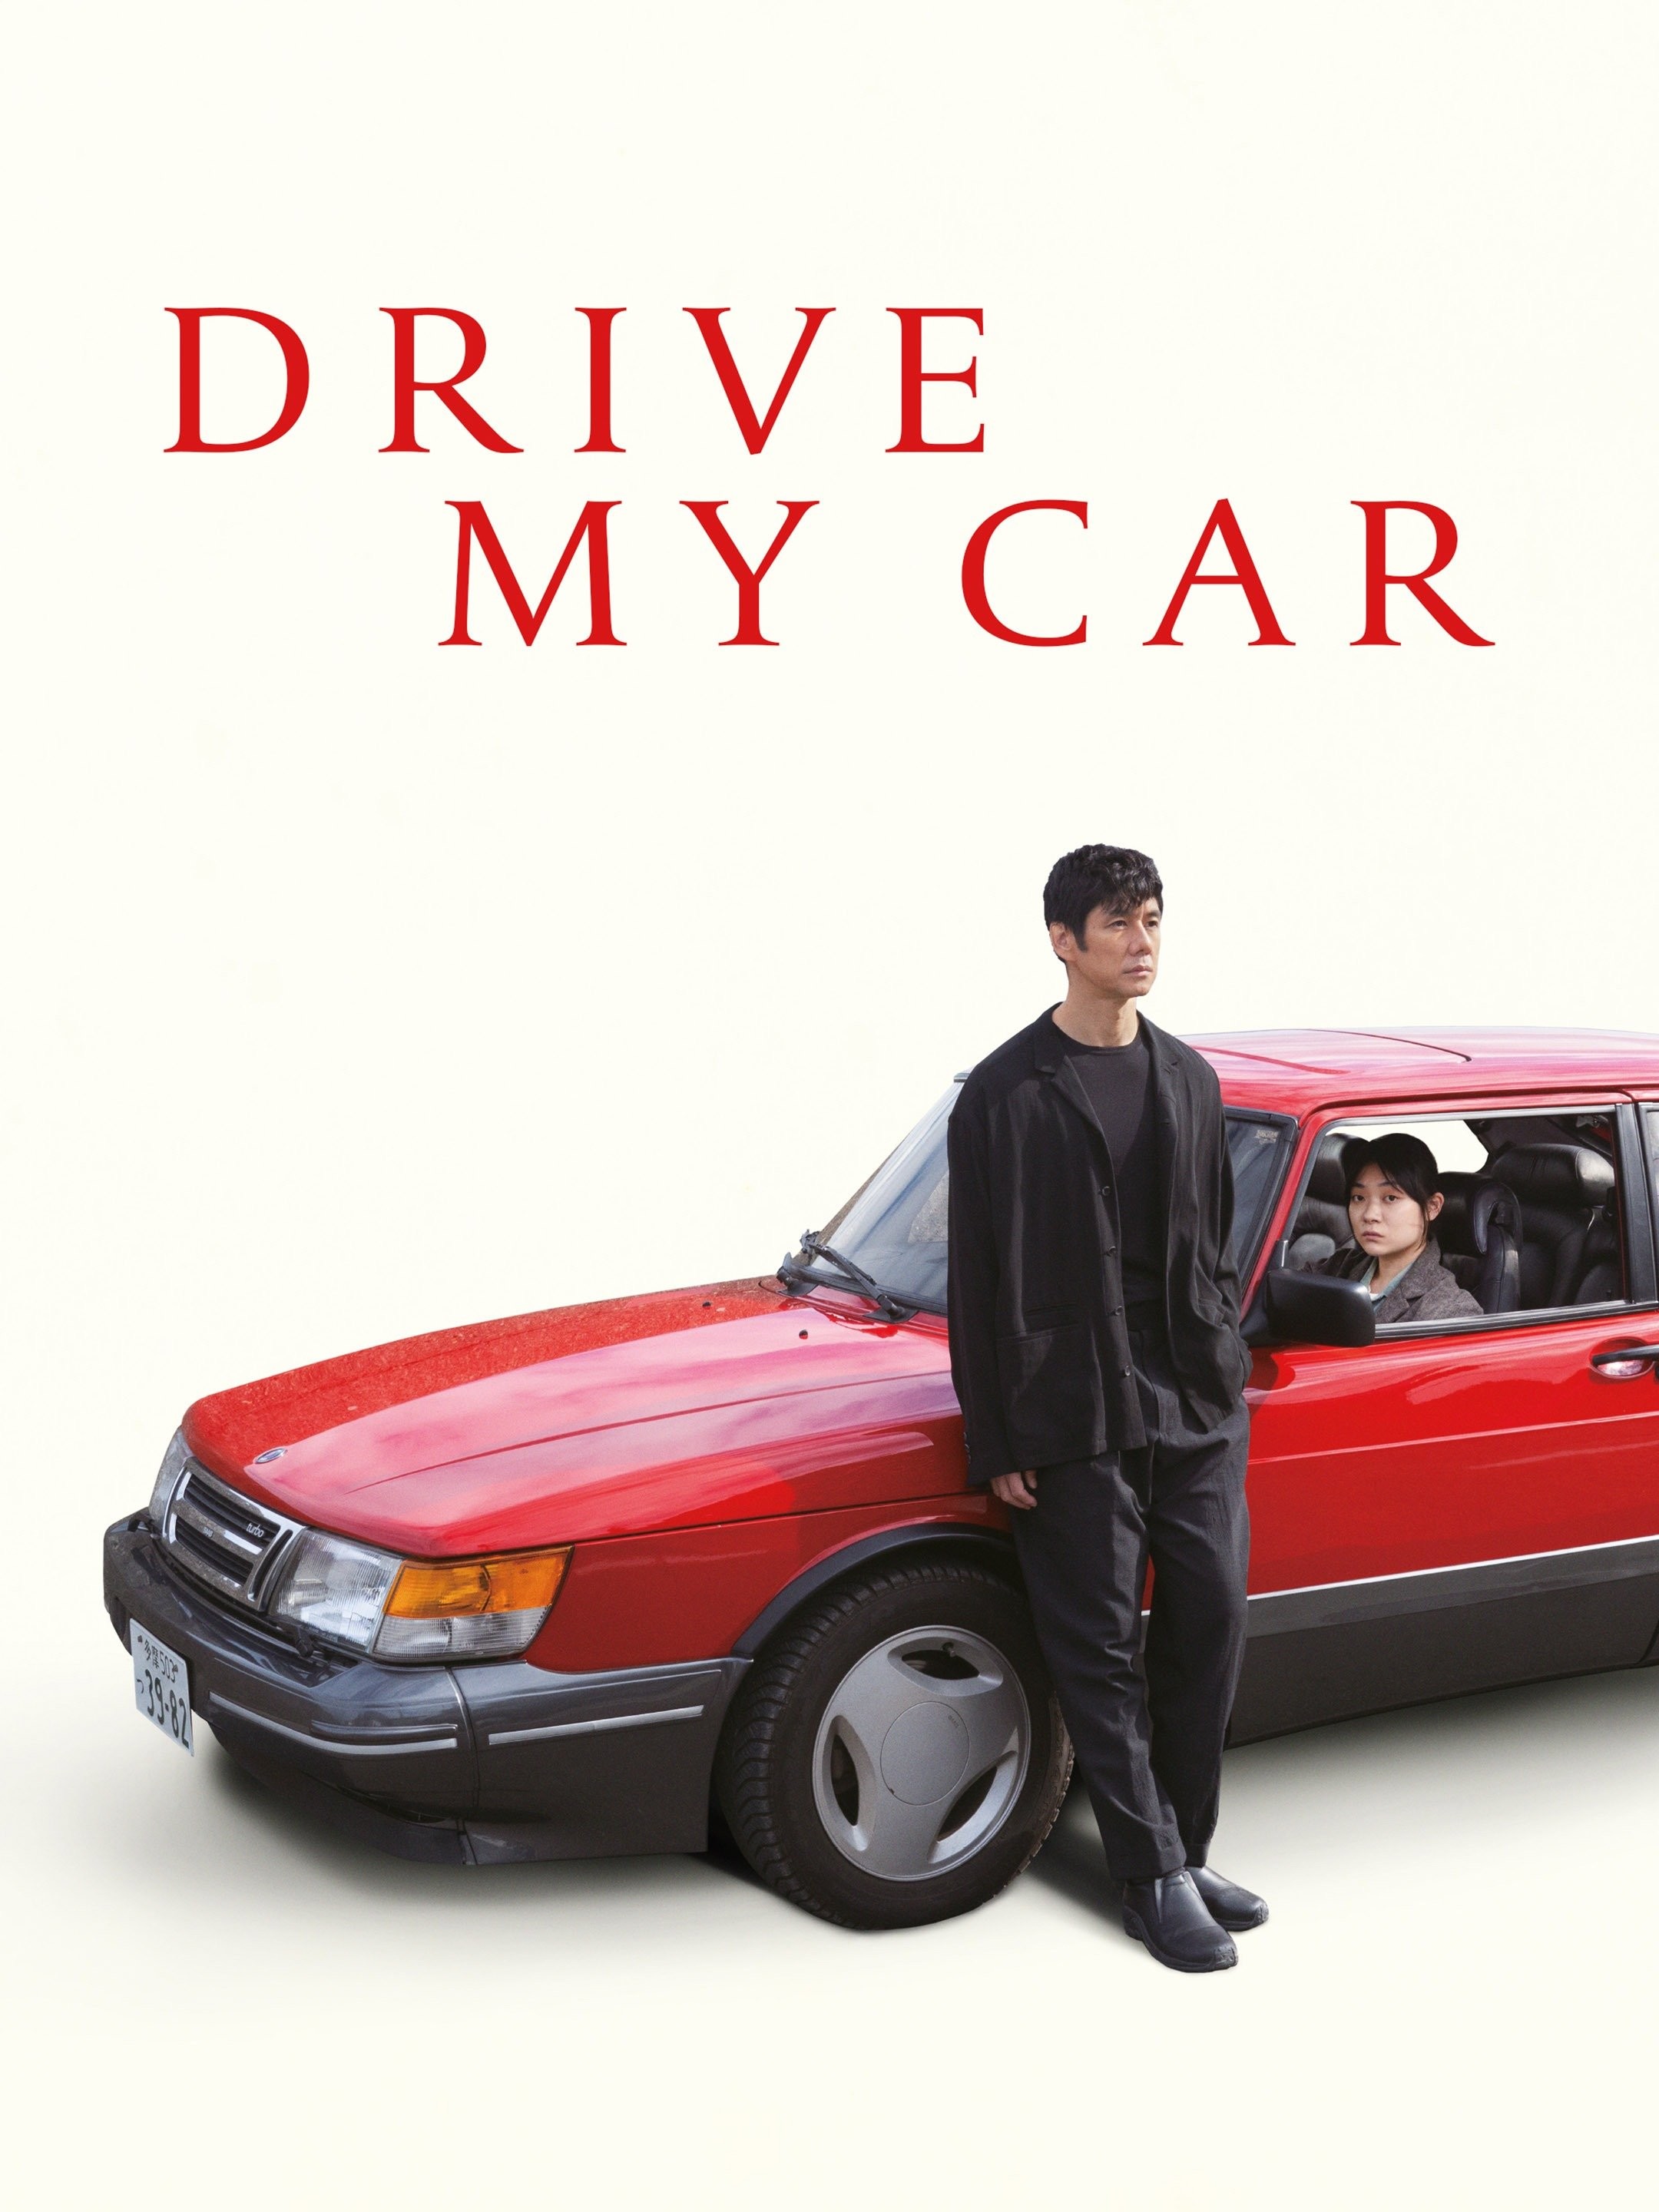 Drive My Car (film) - Wikipedia